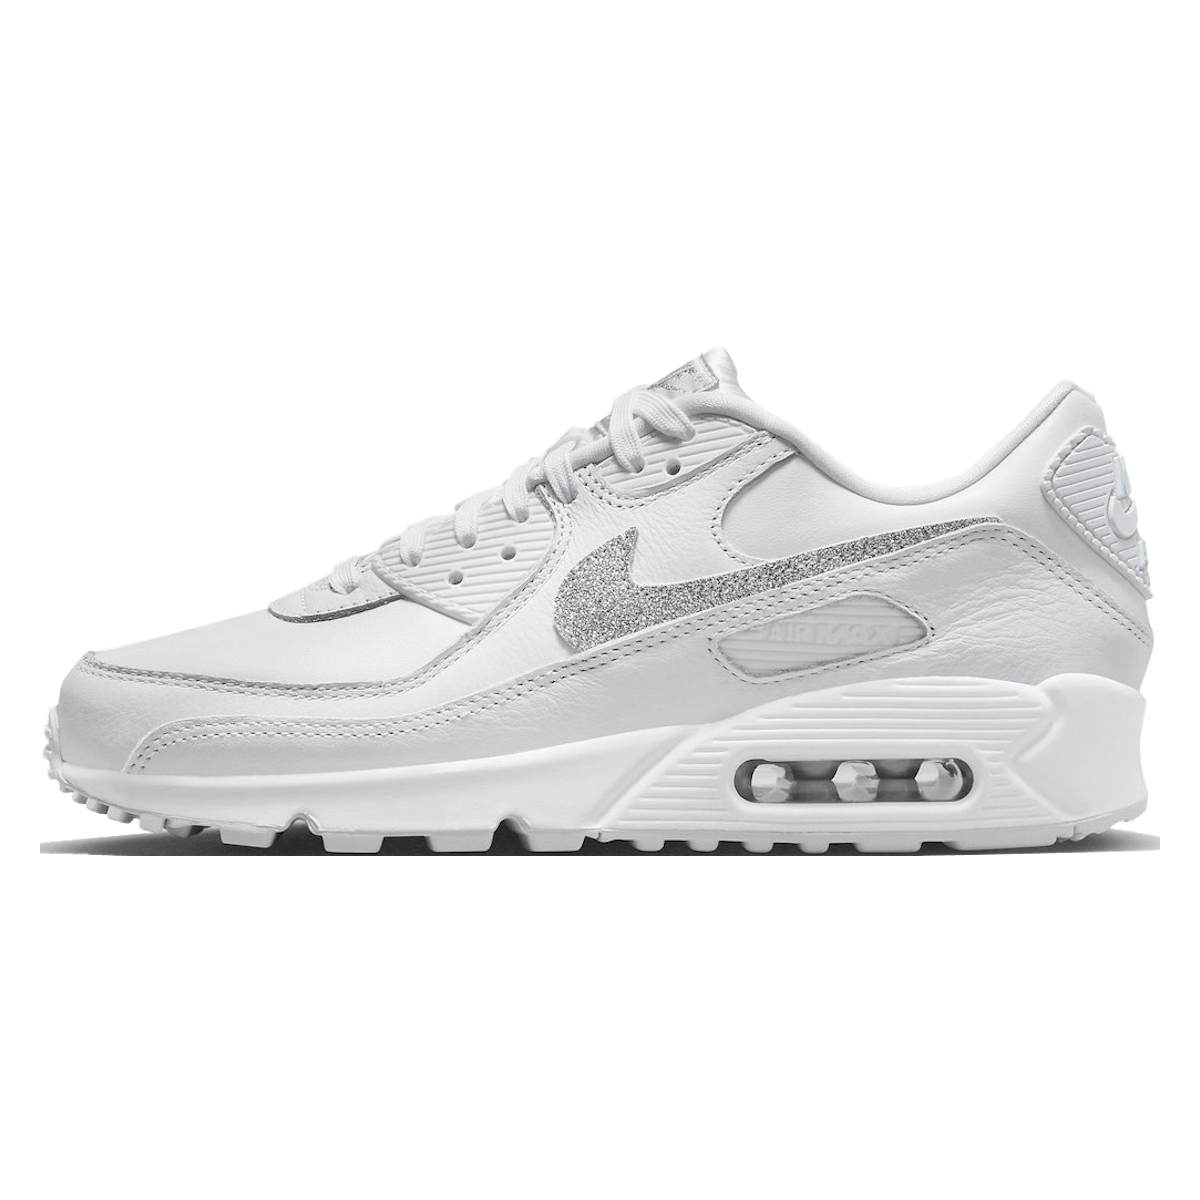 Nike Air Max 90 Wmns "White Silver"